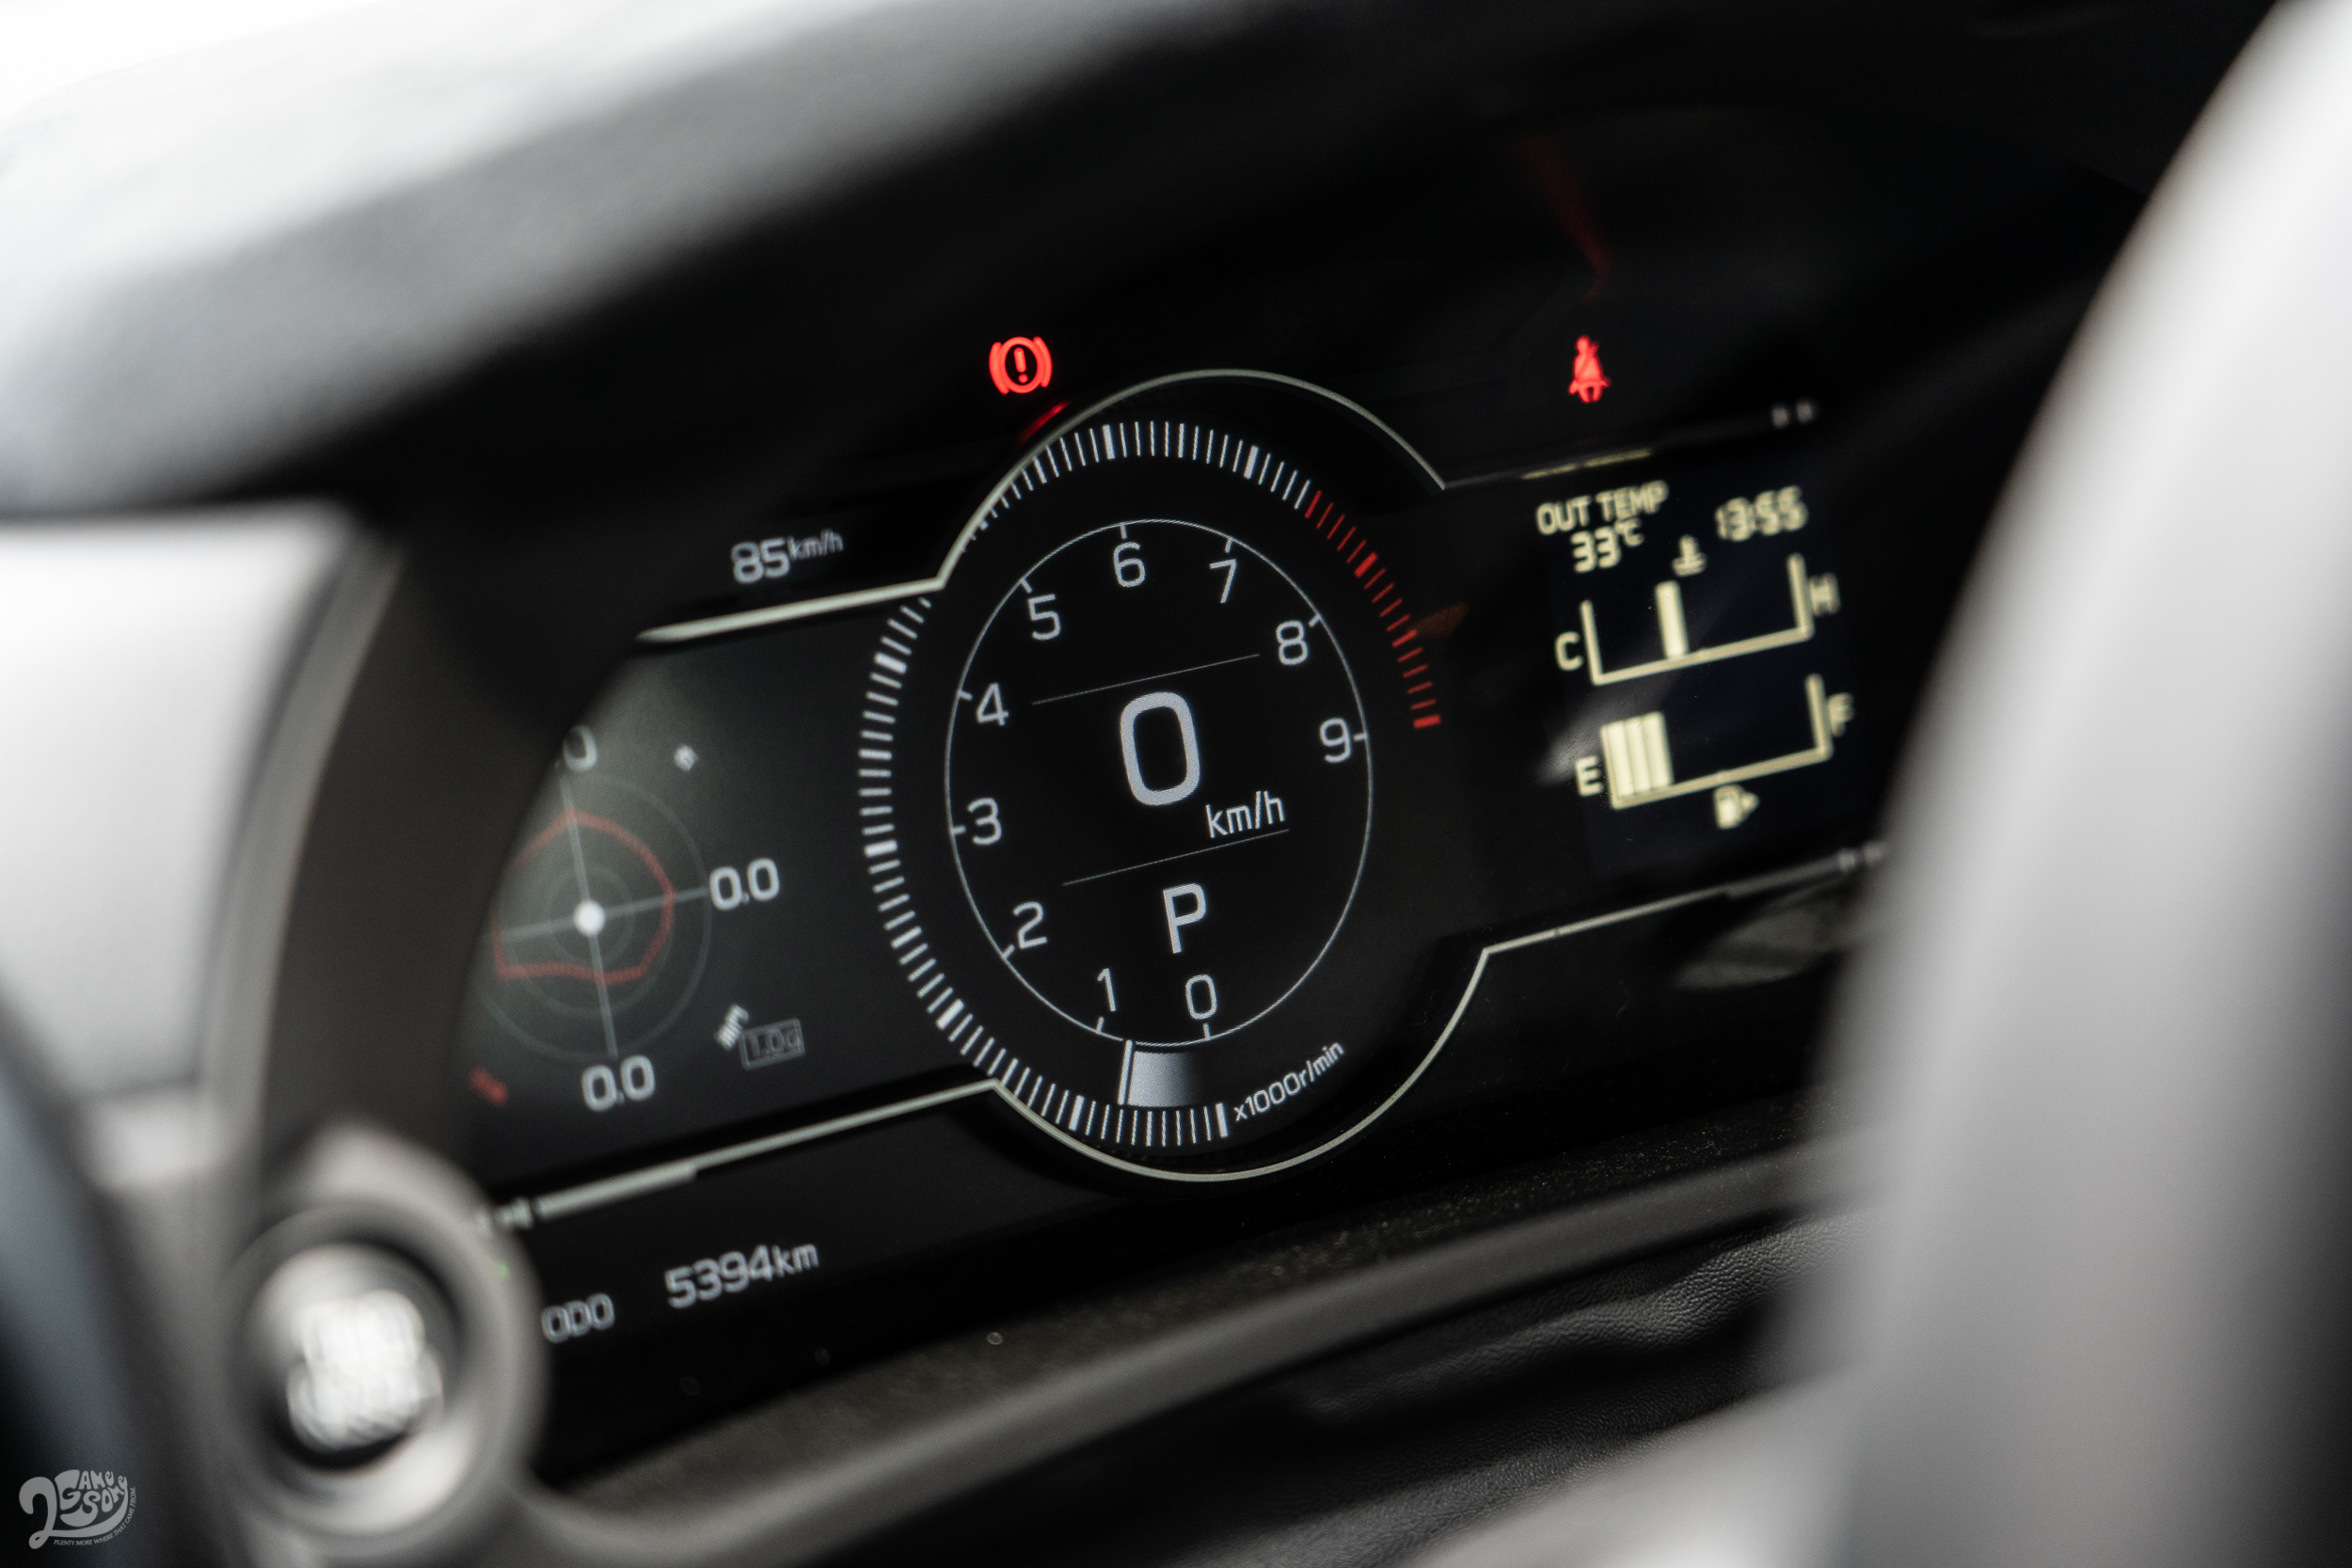 儀錶全面採數位化配置，中央處聚焦在轉、時速錶等與駕駛直接相關的介面數據；左方因應需求可切換駕駛輔助、駕控 G 值等資訊。